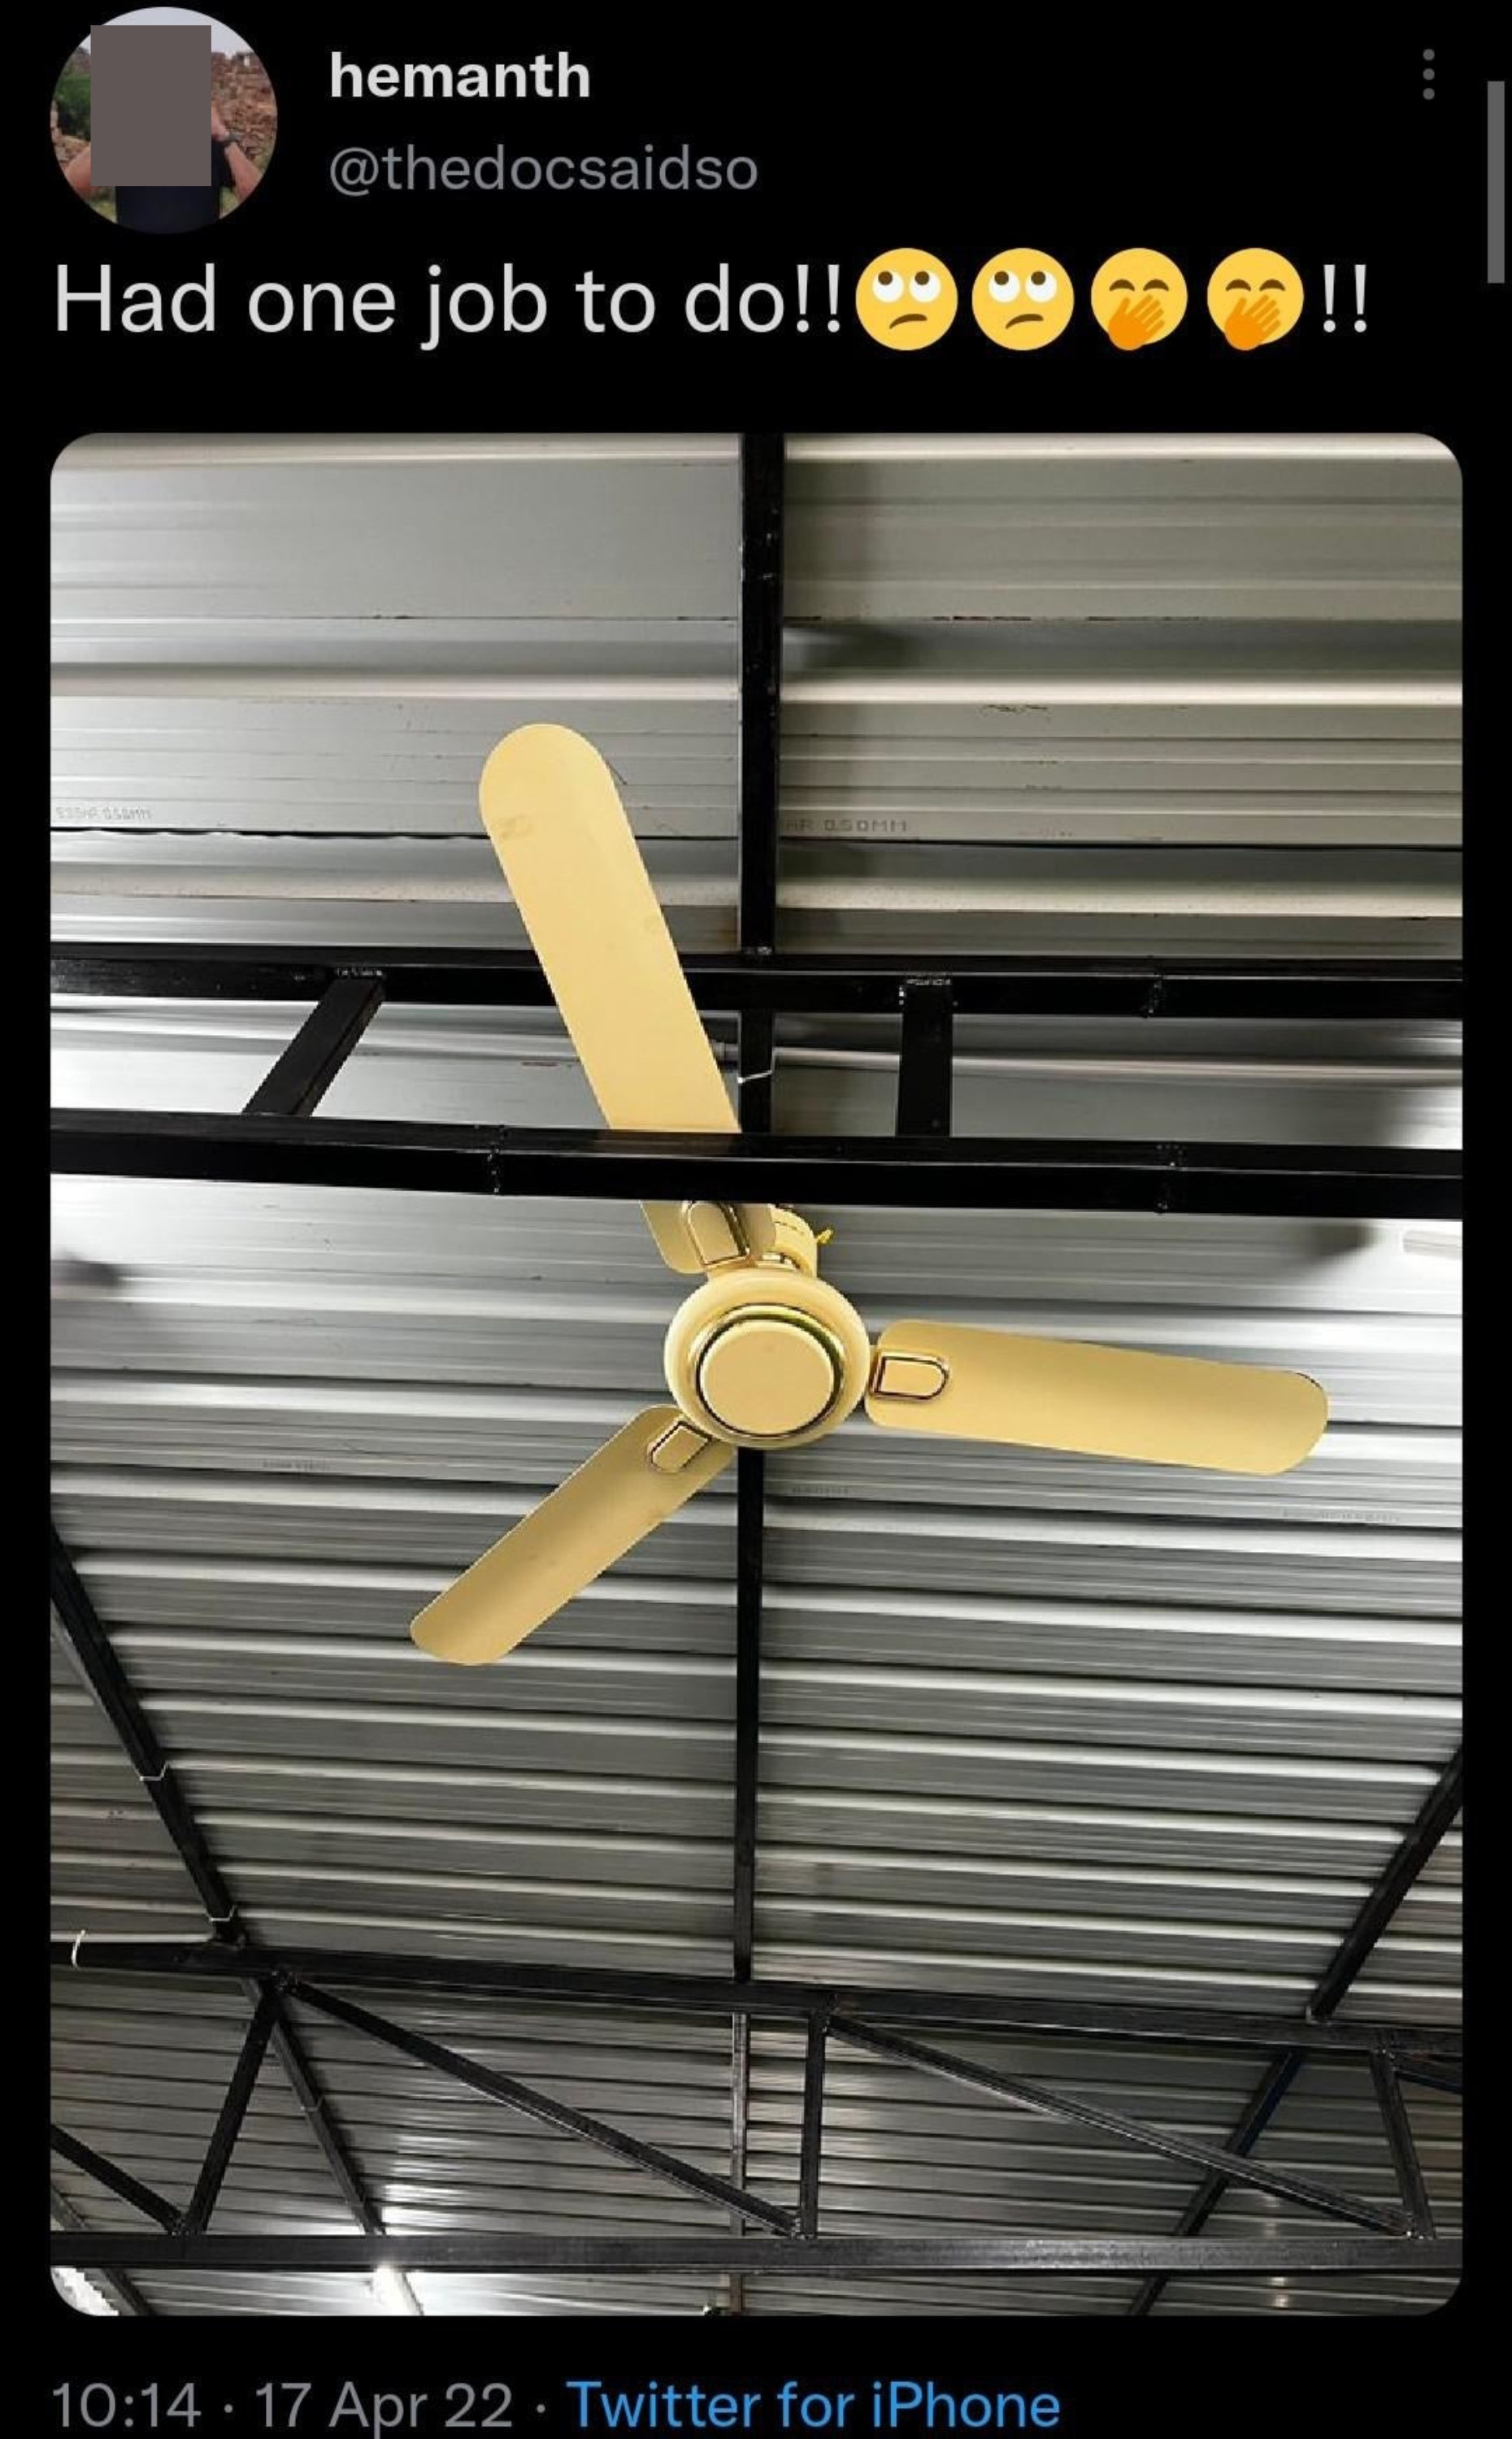 A ceiling fan blocked by scaffolding